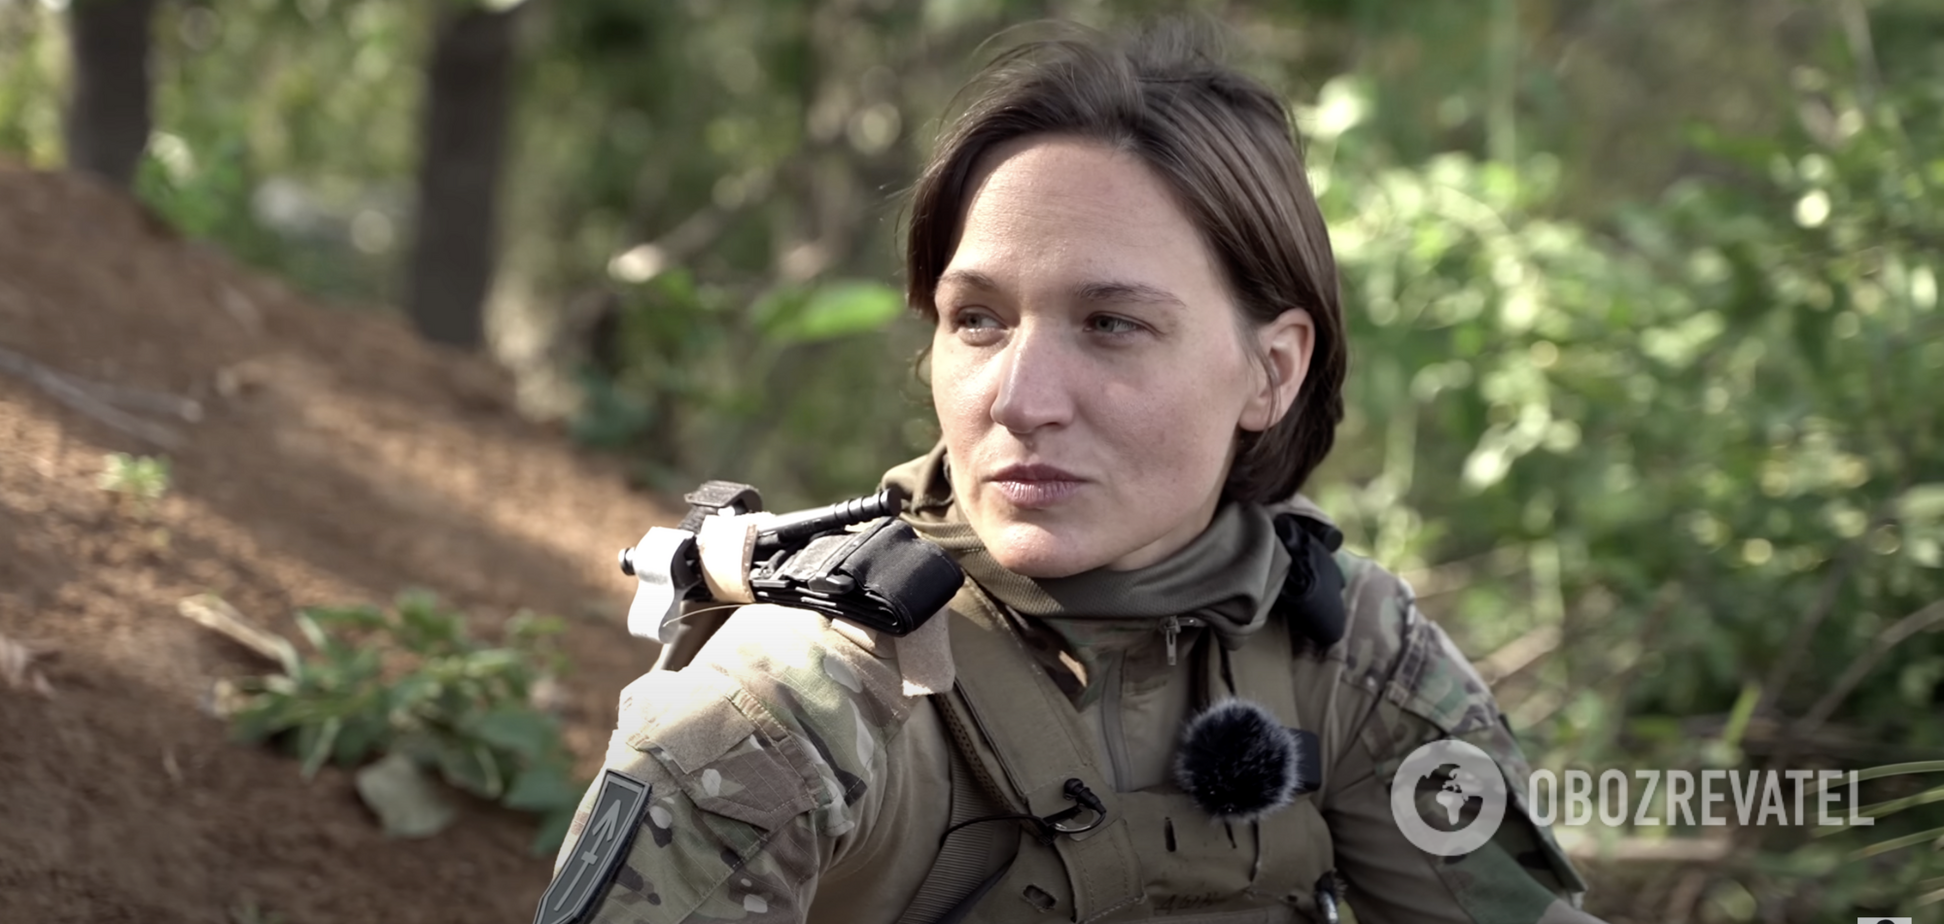 Українська захисниця Даша 'ДШК' розкритикувала нафарбованих жінок у формі ЗСУ: війна – це не кіно!